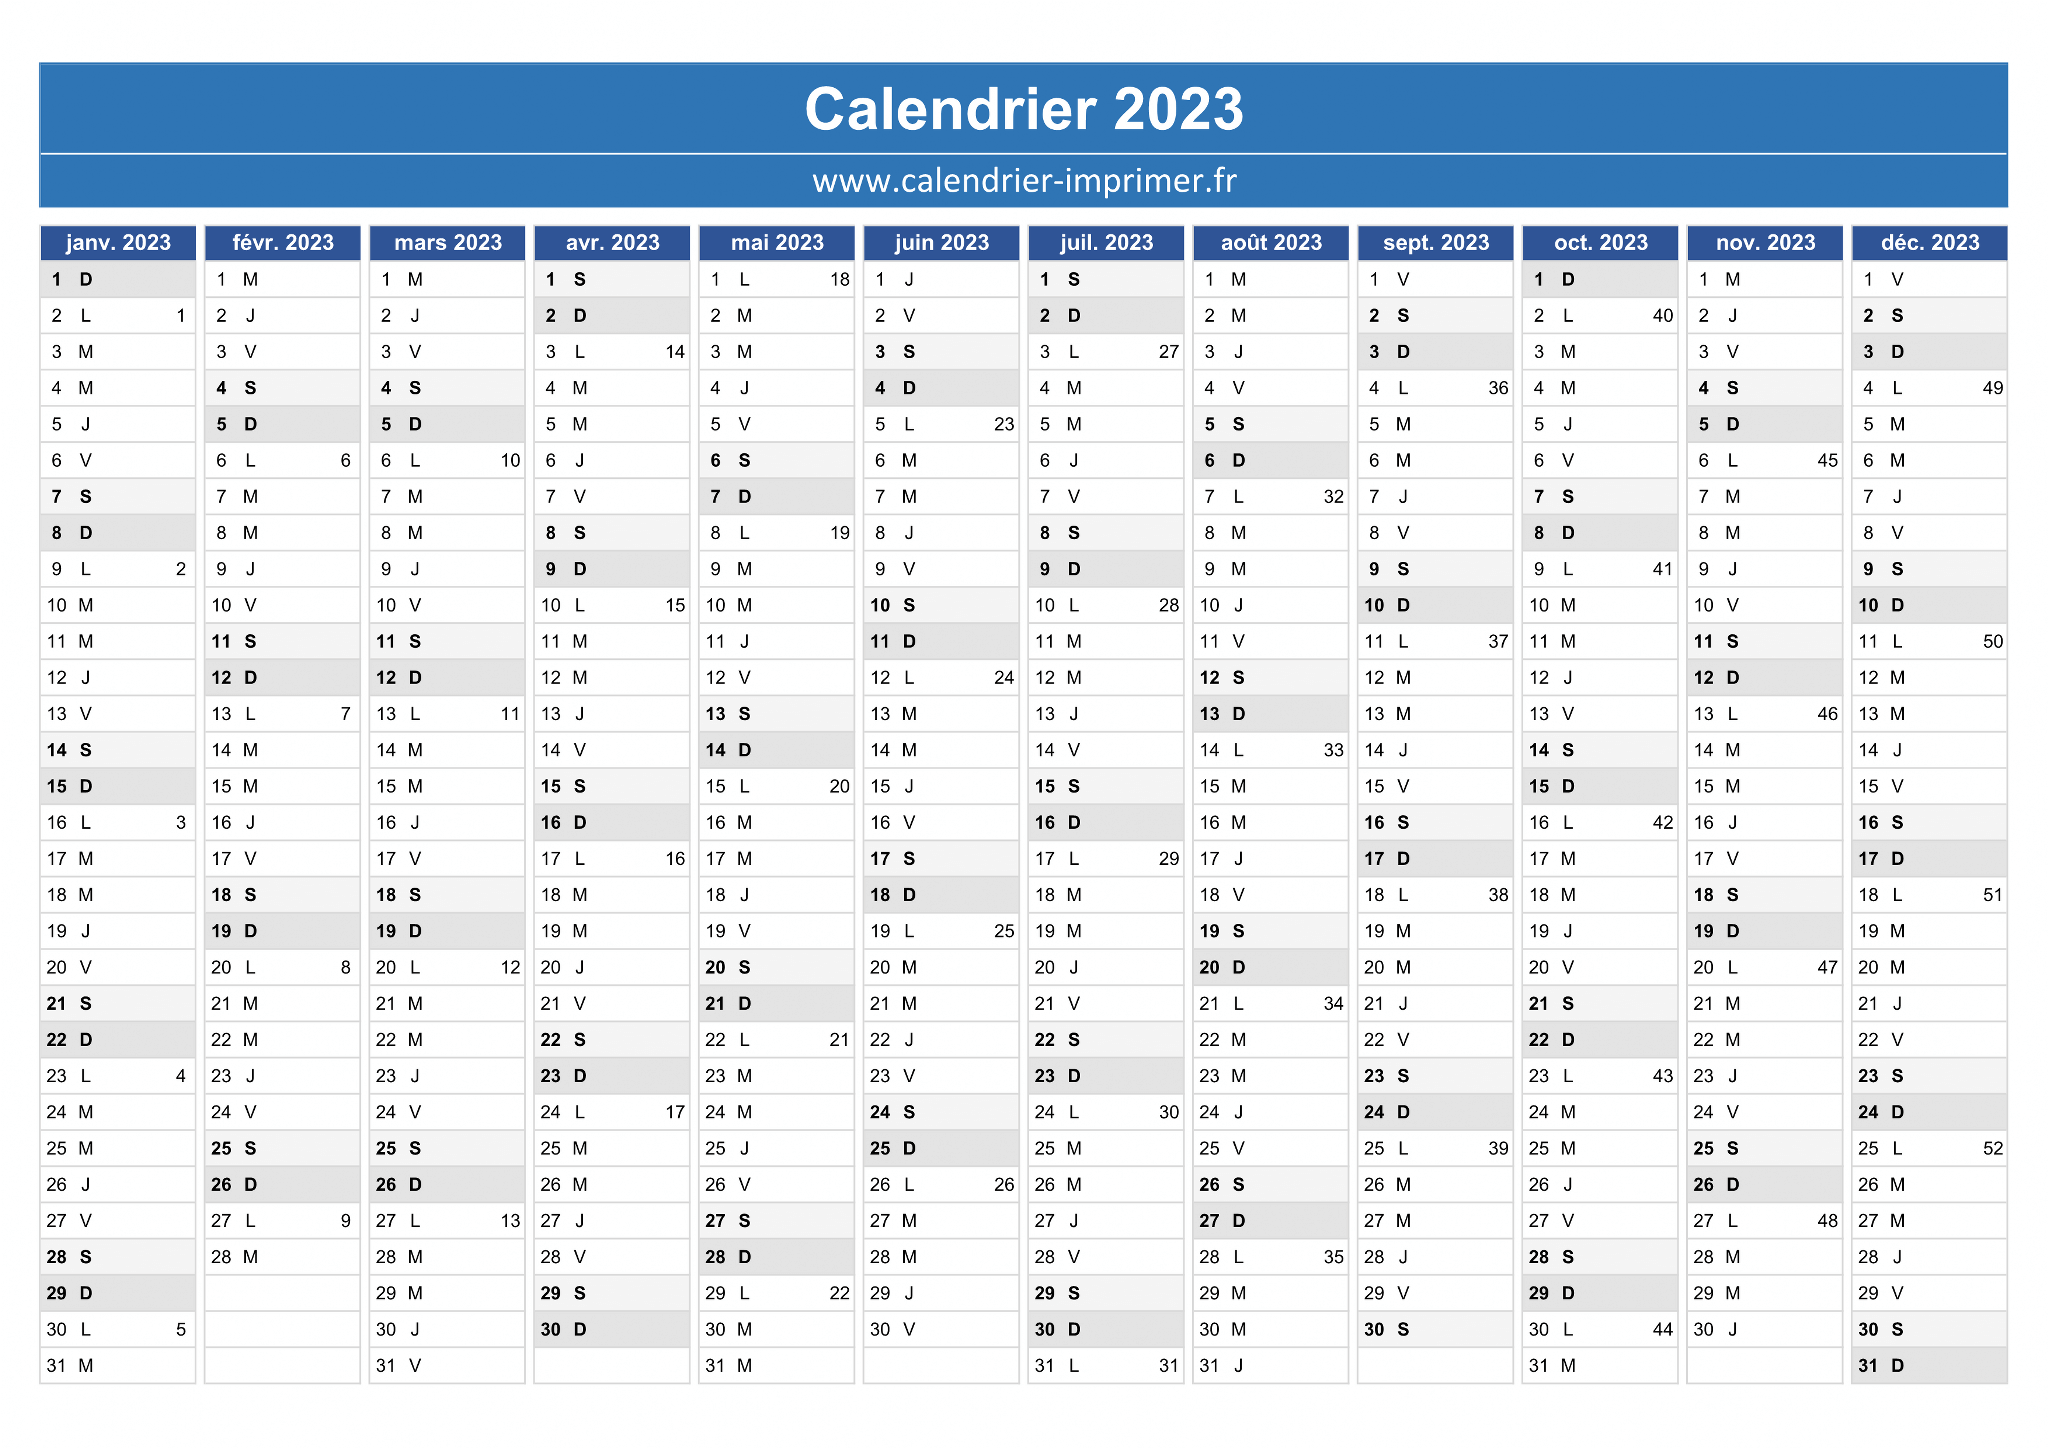 Calendrier Excel 2023 à télécharger